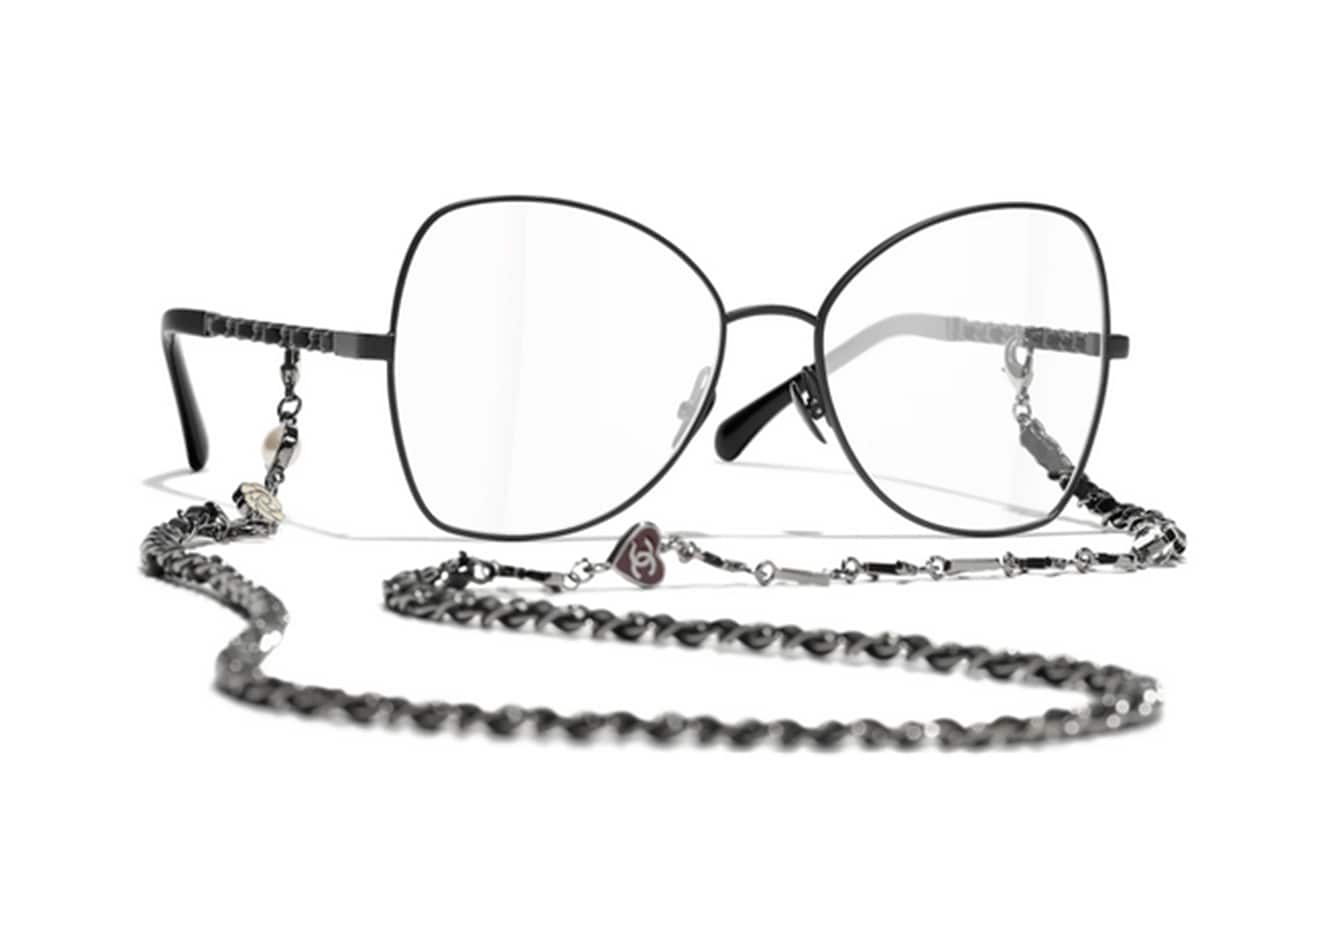 Chanel Eyewear. Occhiale grande a farfalla, in metallo nero con catena intrecciata in pelle e metallo.